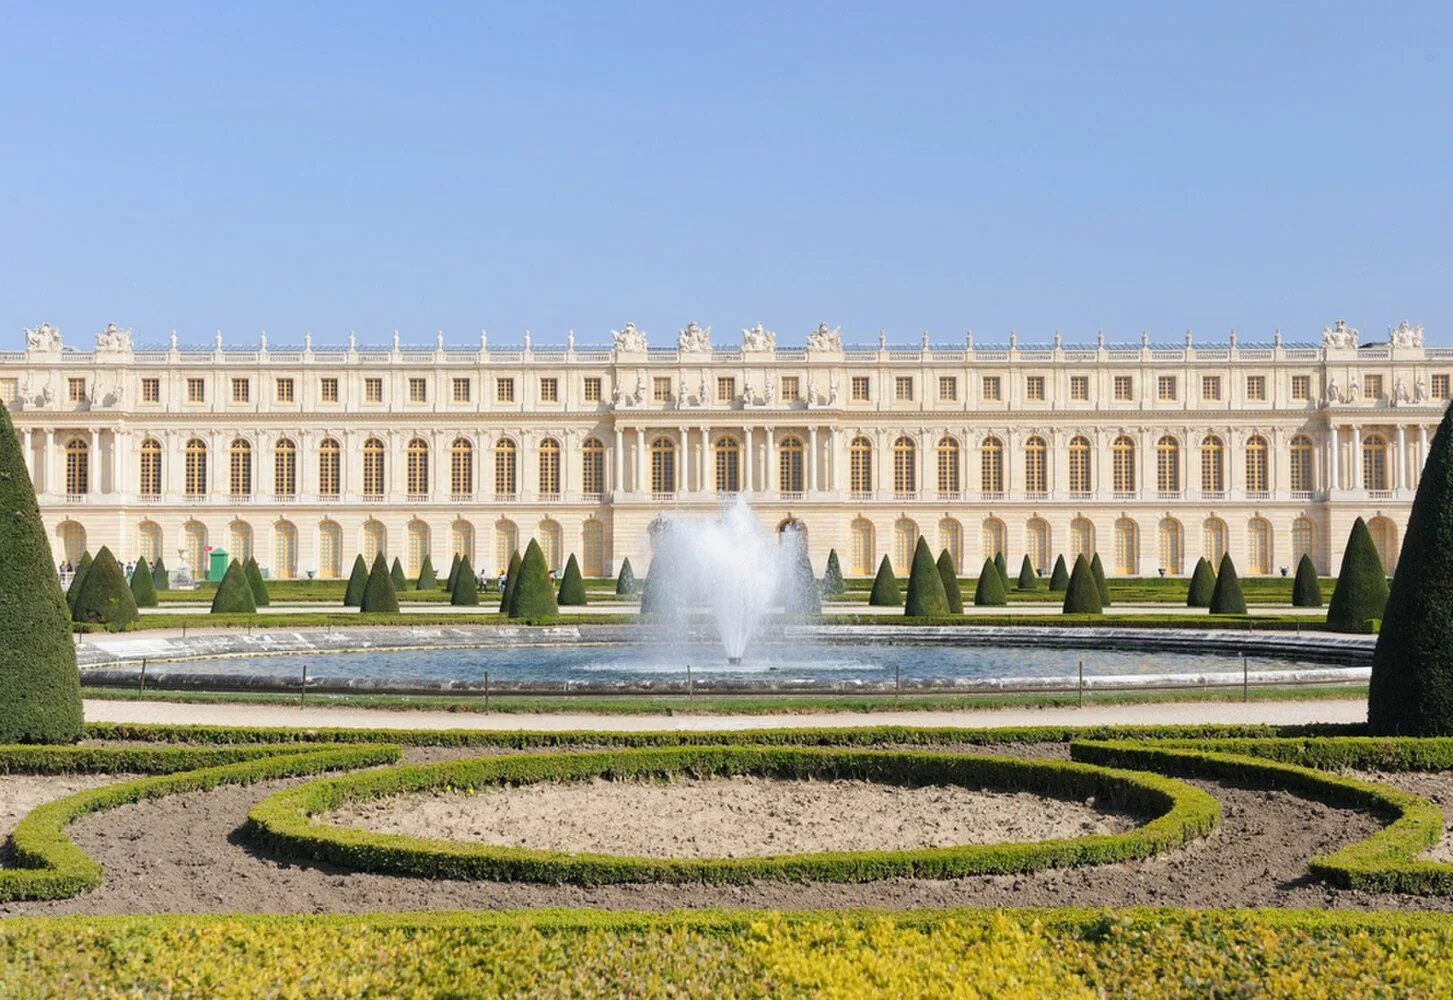 Chateau versailles. Версальский дворец. Версаль. Версальский дворцово-парковый комплекс, Франция. Королевский дворец в Версале. Дворец и парк в Версале Франция.